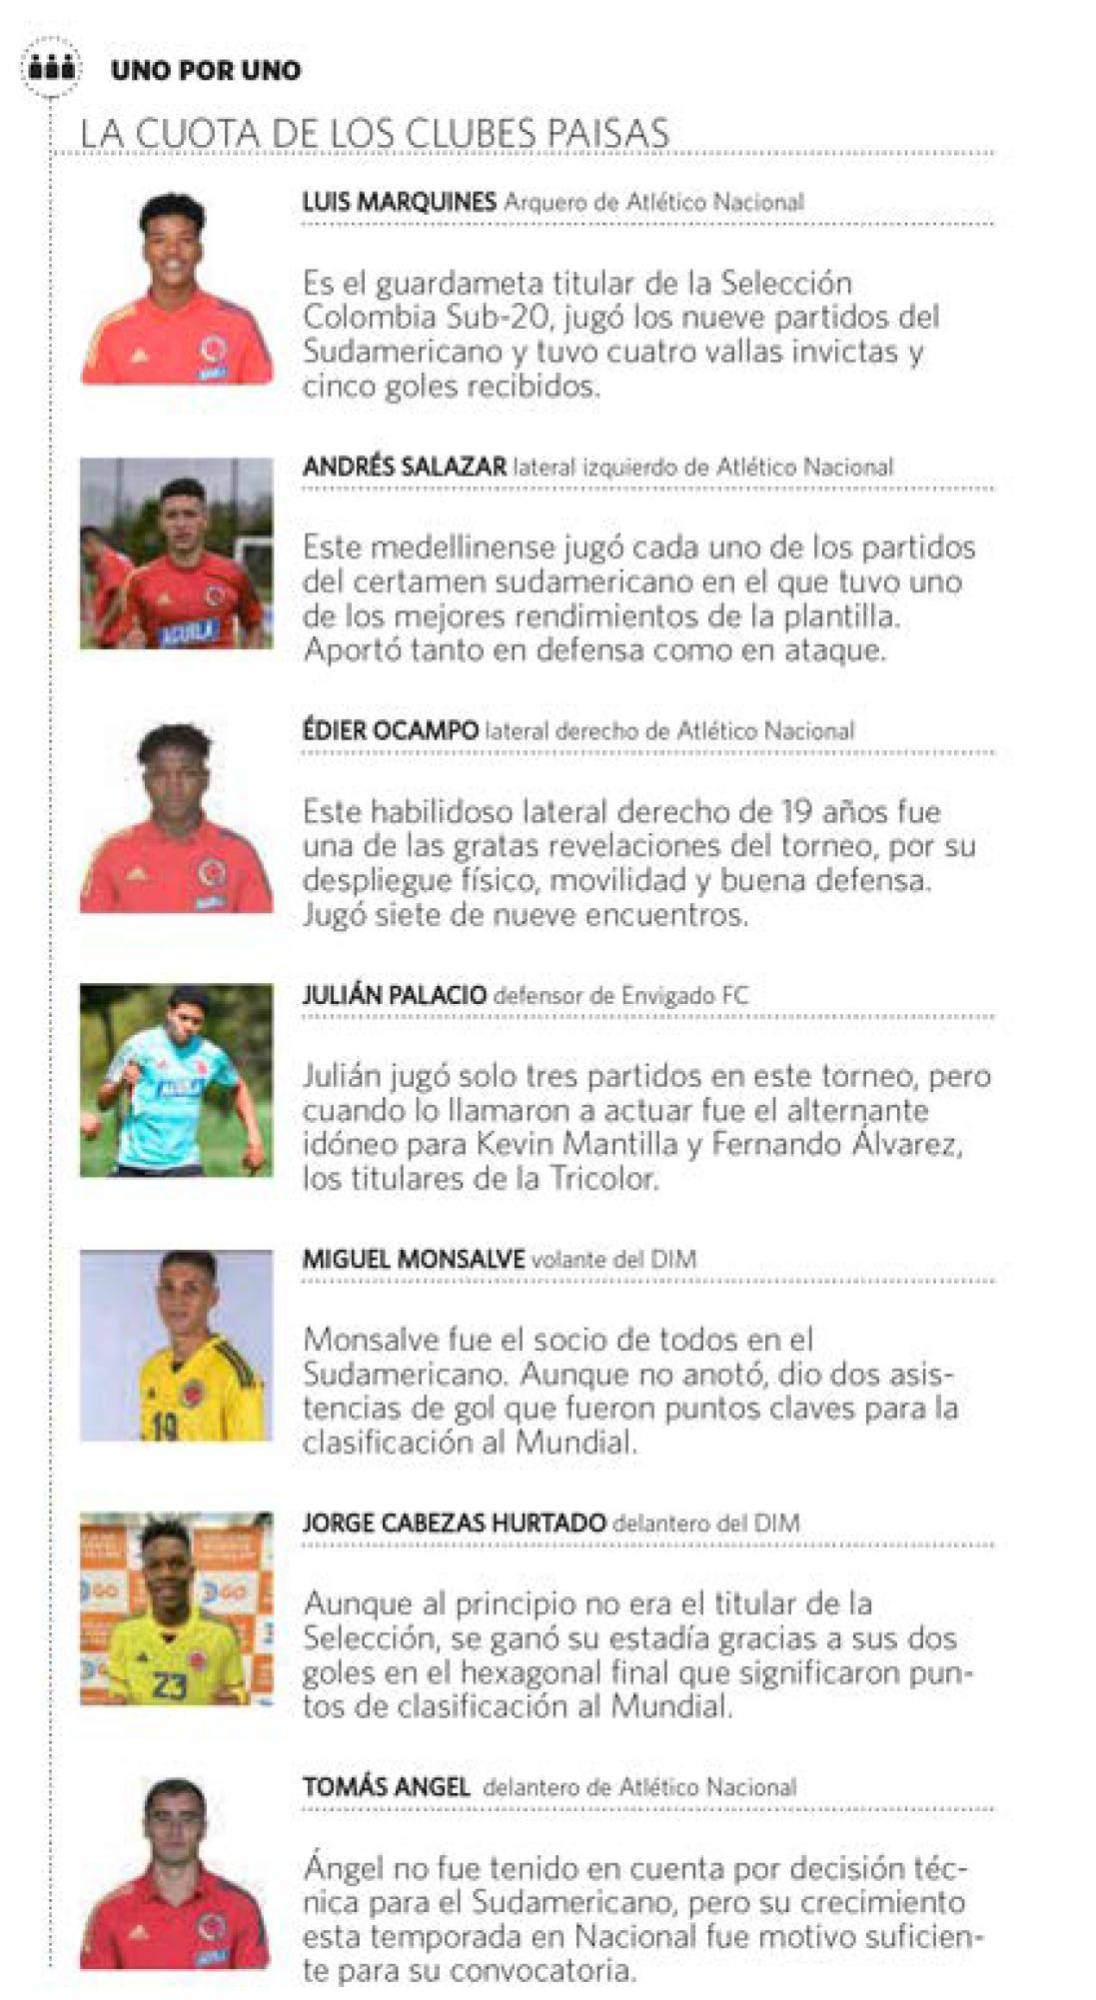 La calidad de los equipos paisas brilla en la Selección Colombia Sub-20